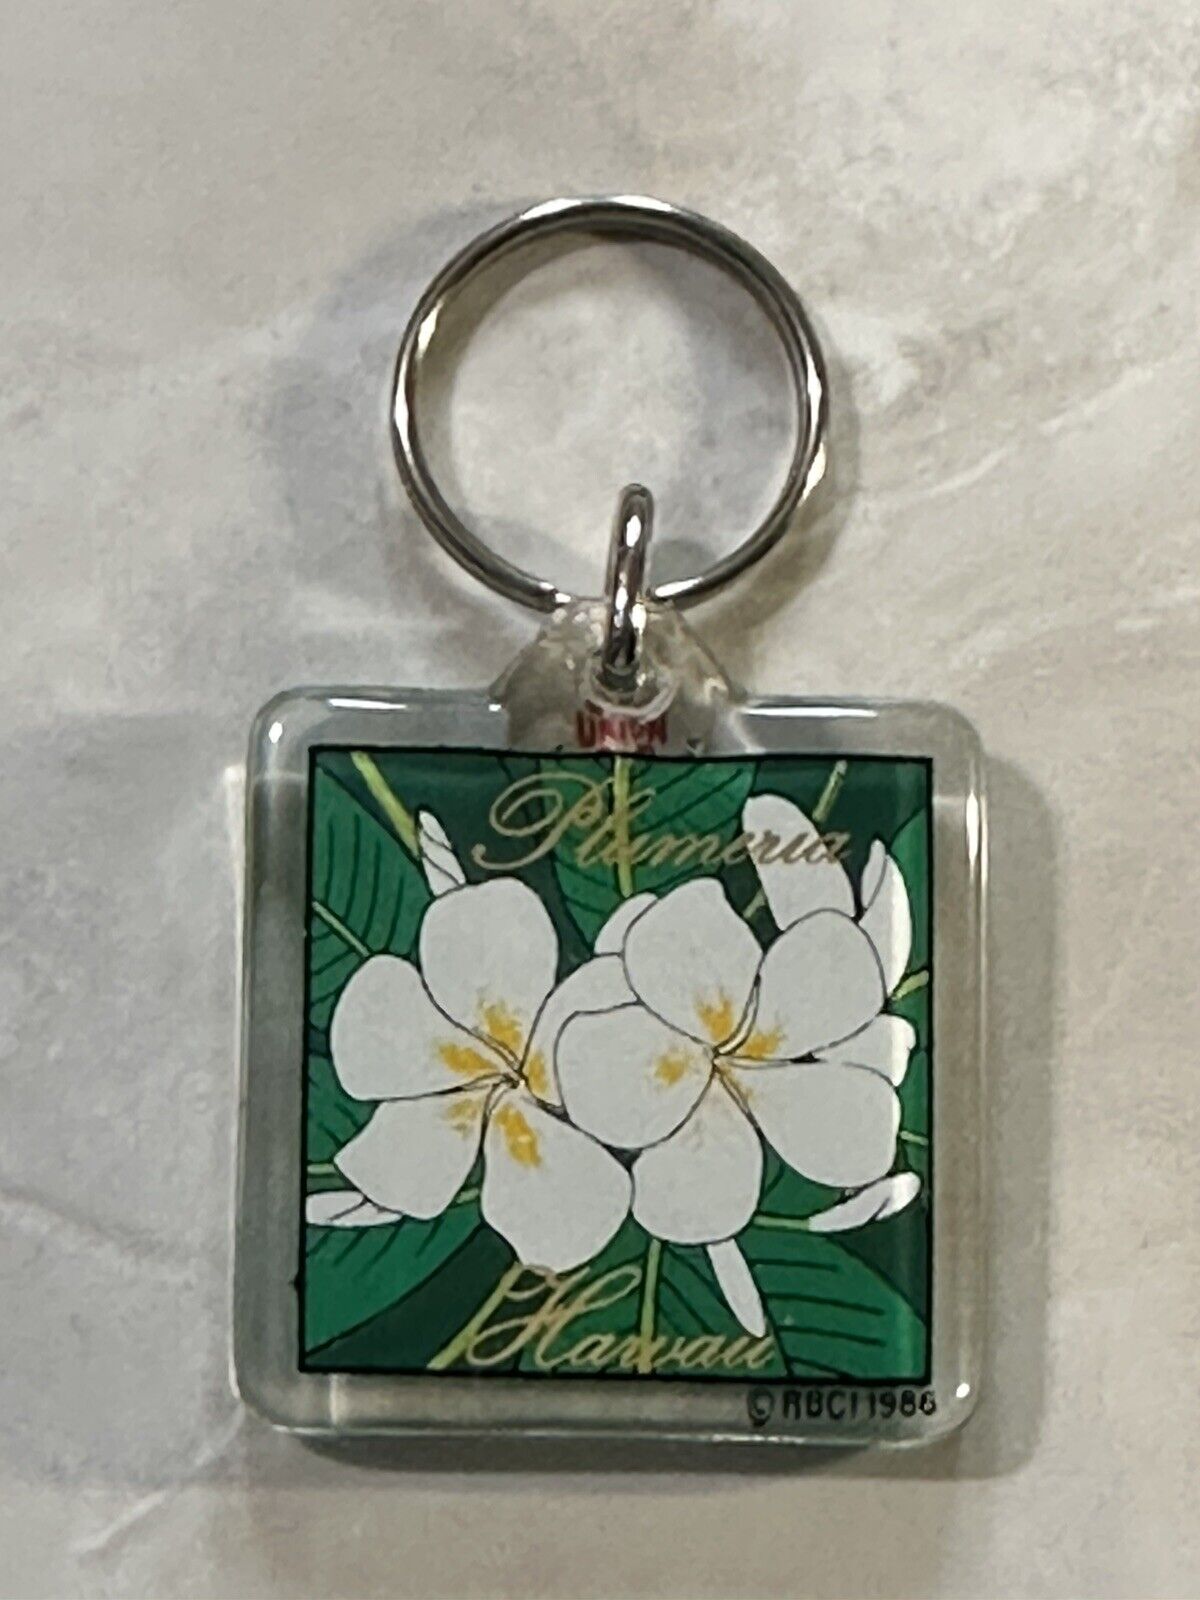 Vintage HAWAII Islands plumeria Flower HI 1986 Keychain Key Chain Fob Key Ring